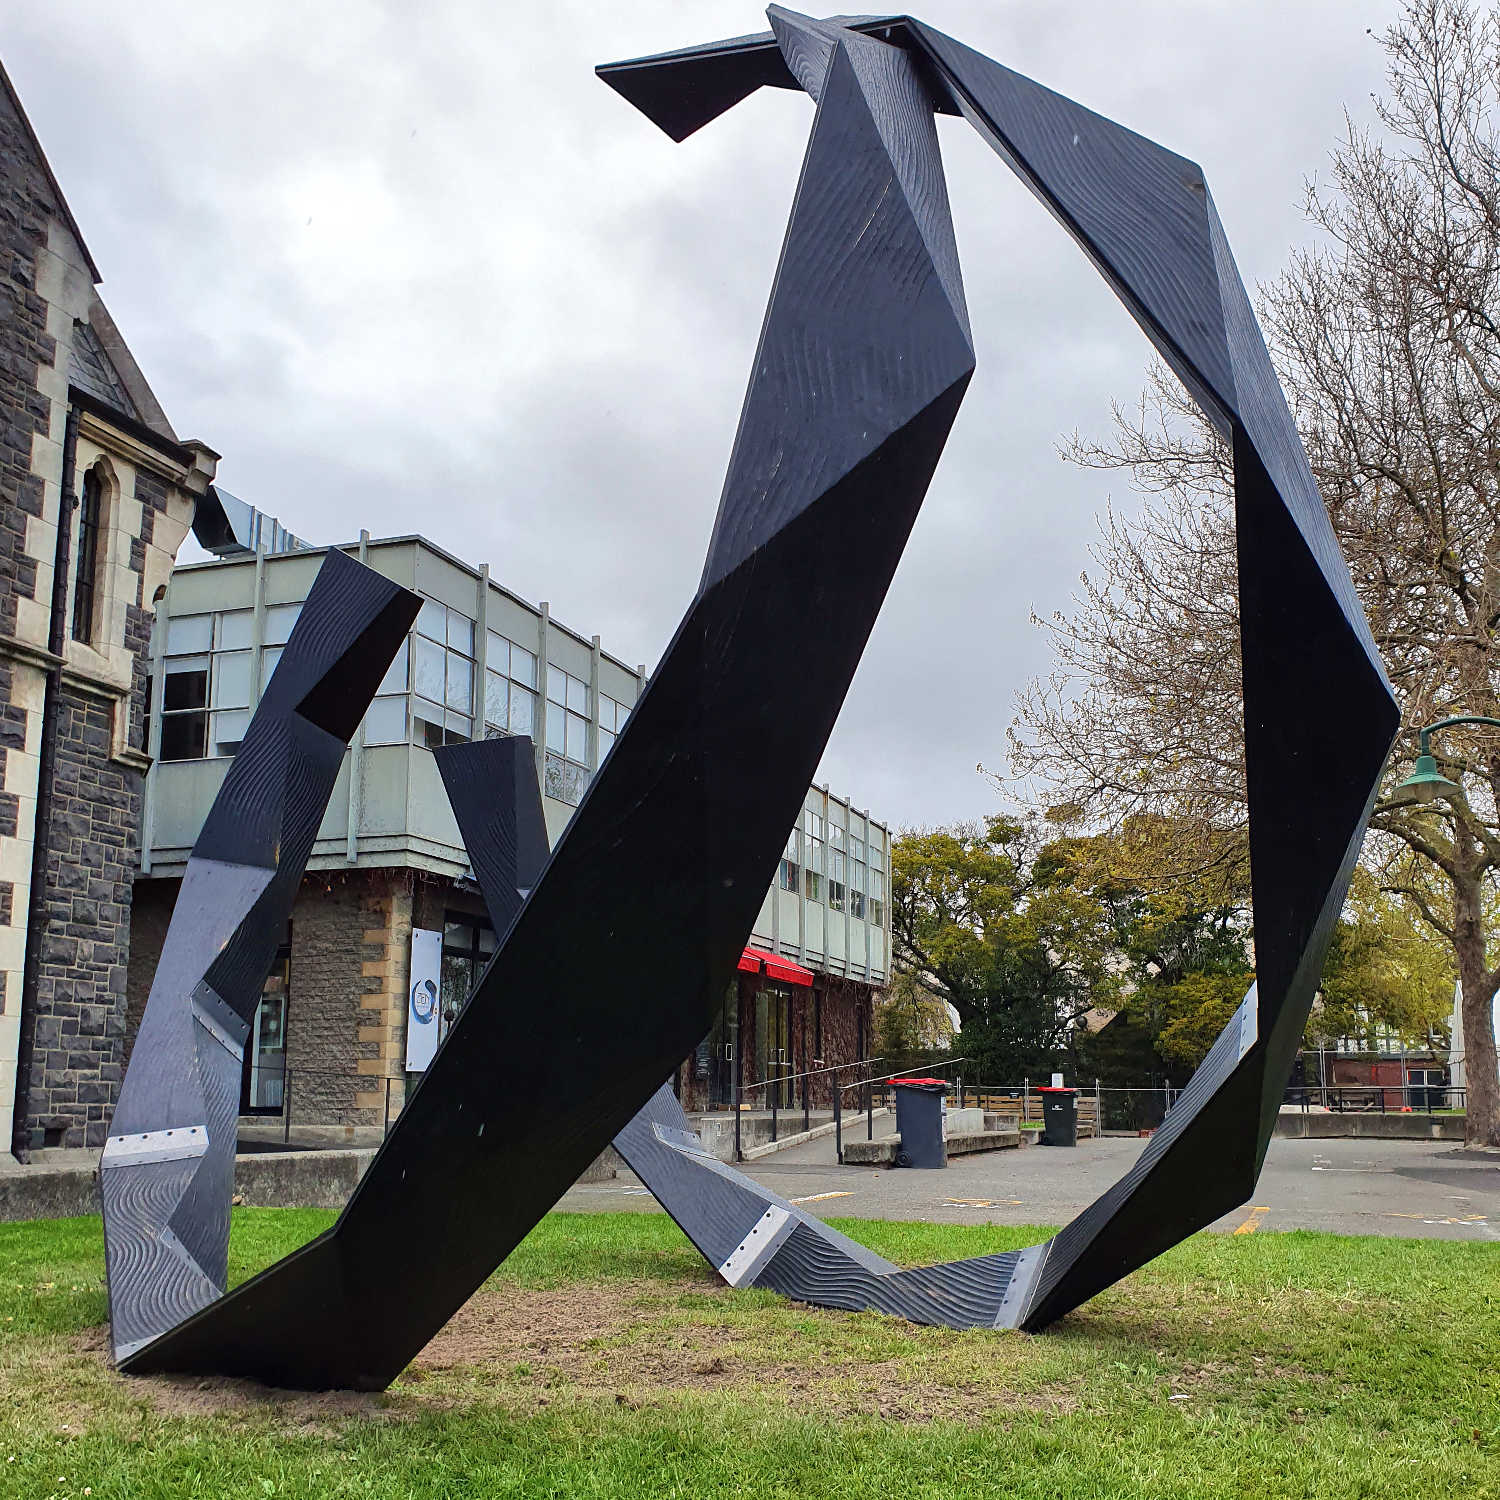 Christchurch sculpture, New Zealand